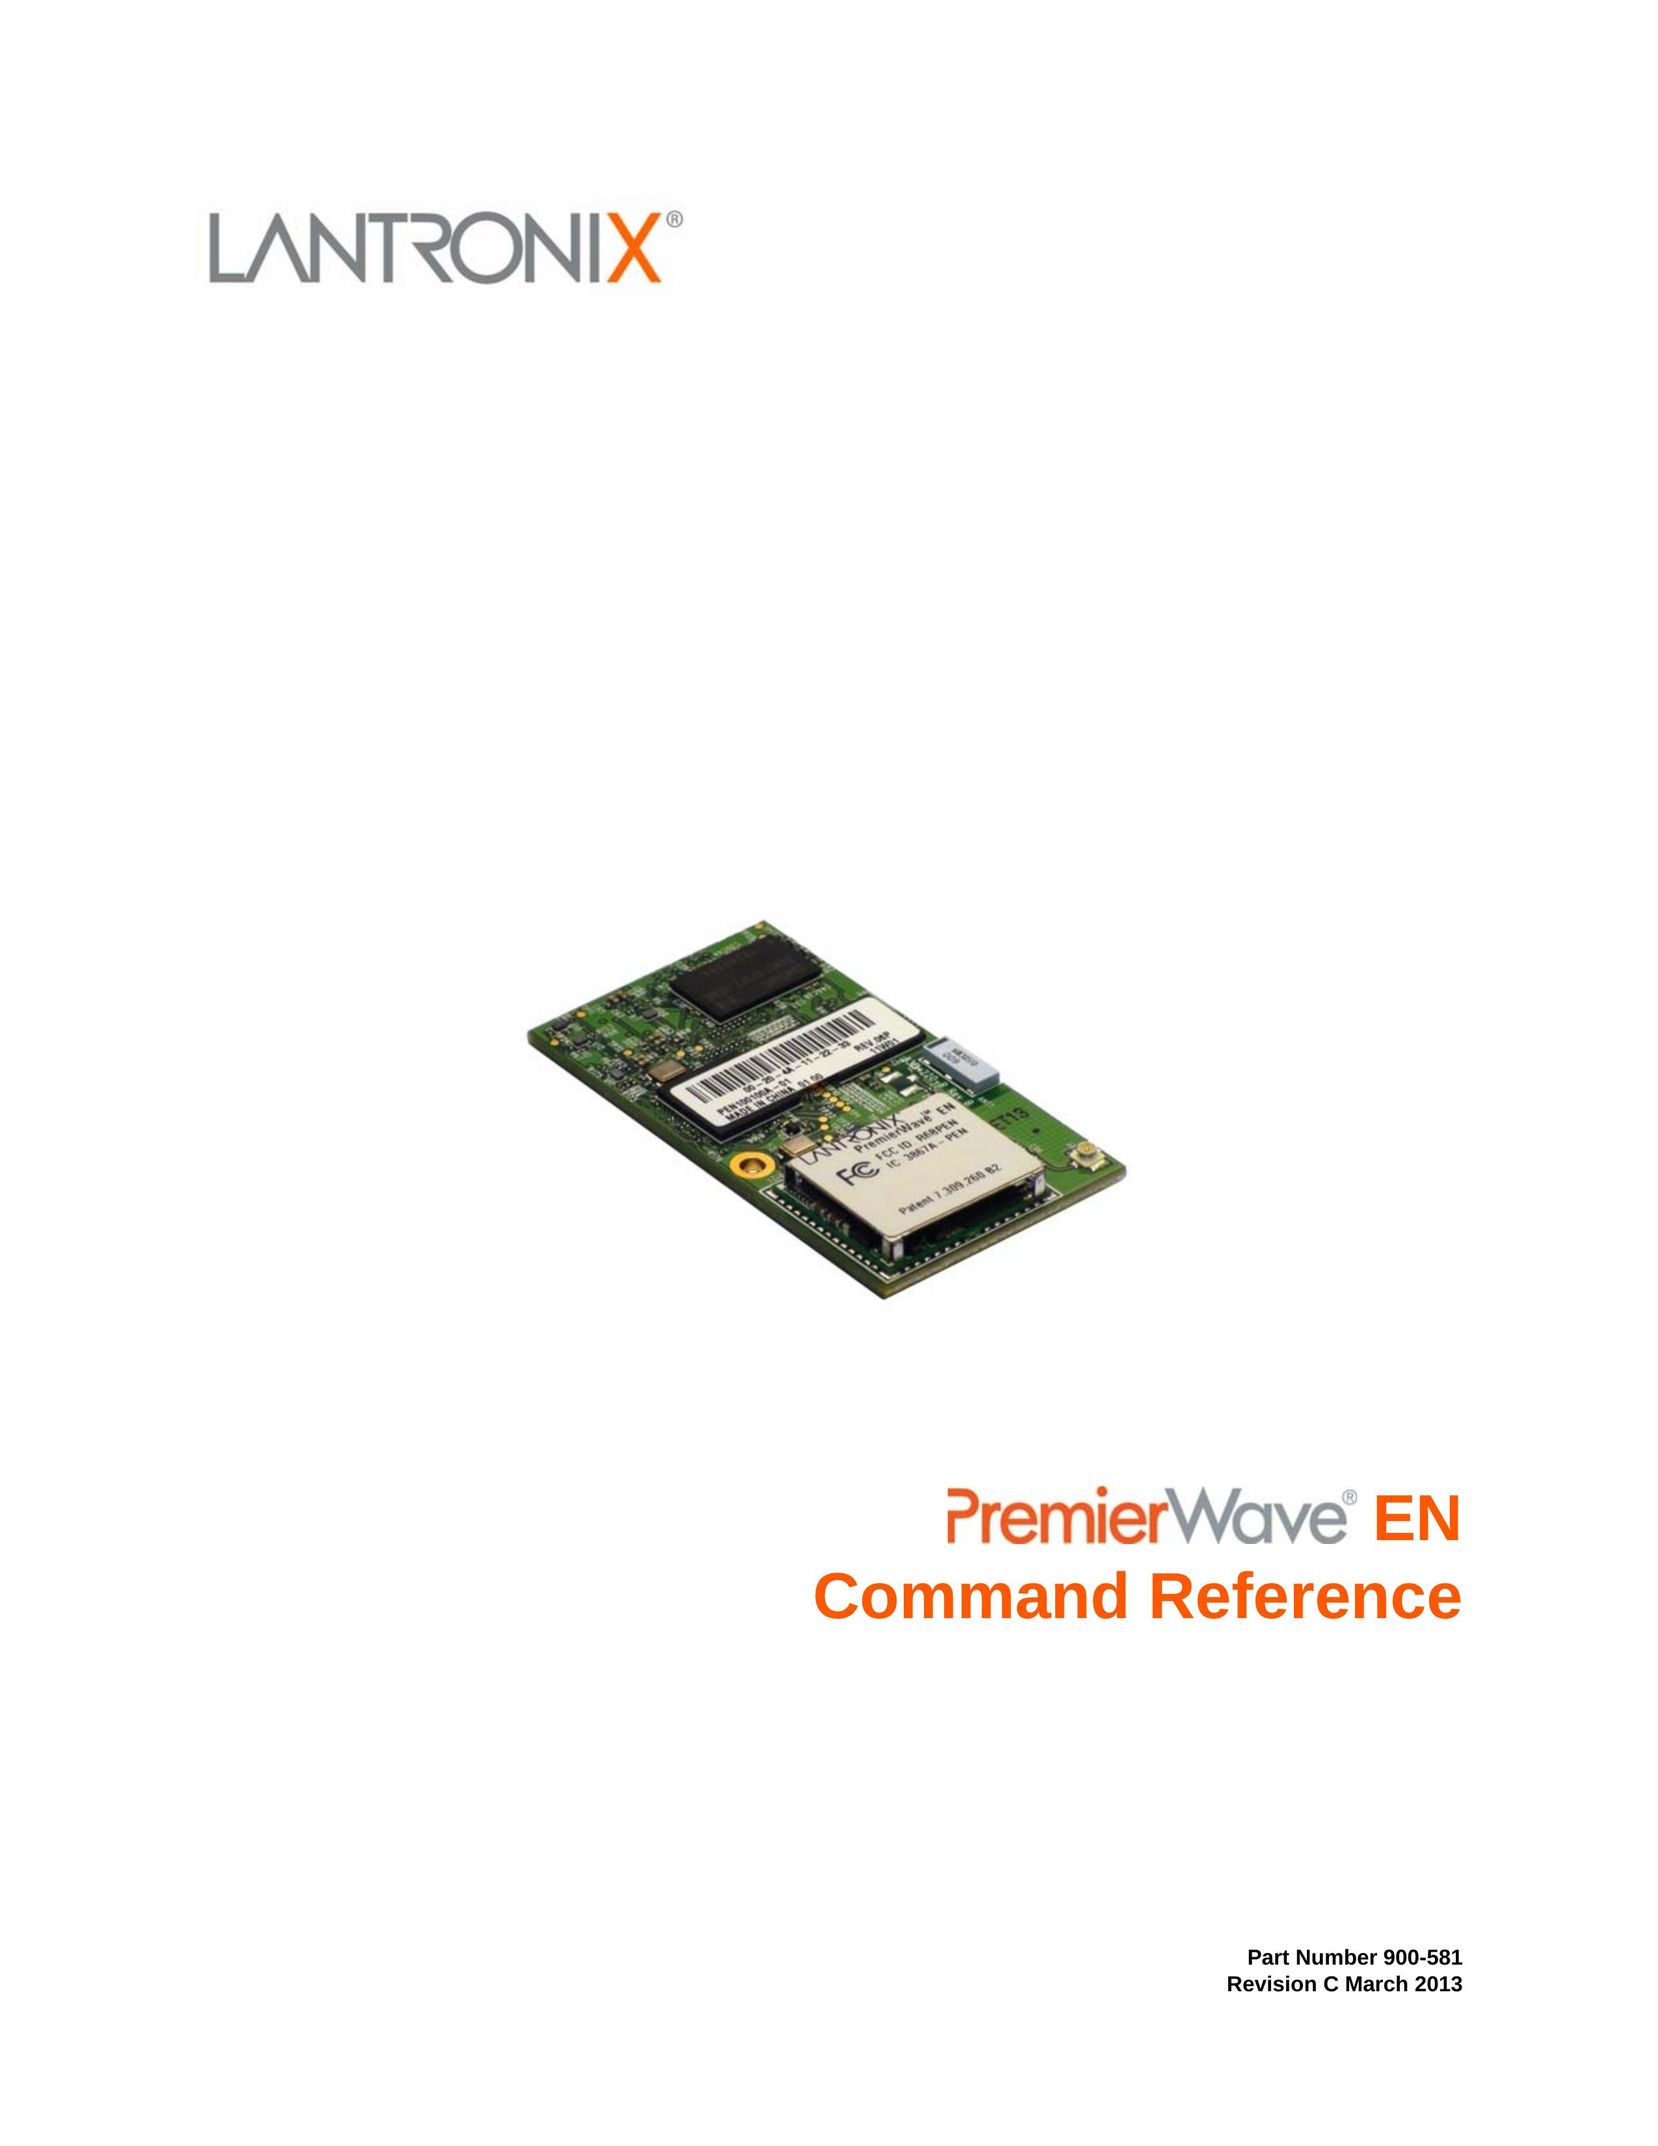 Lantronix 900-581 Computer Hardware User Manual